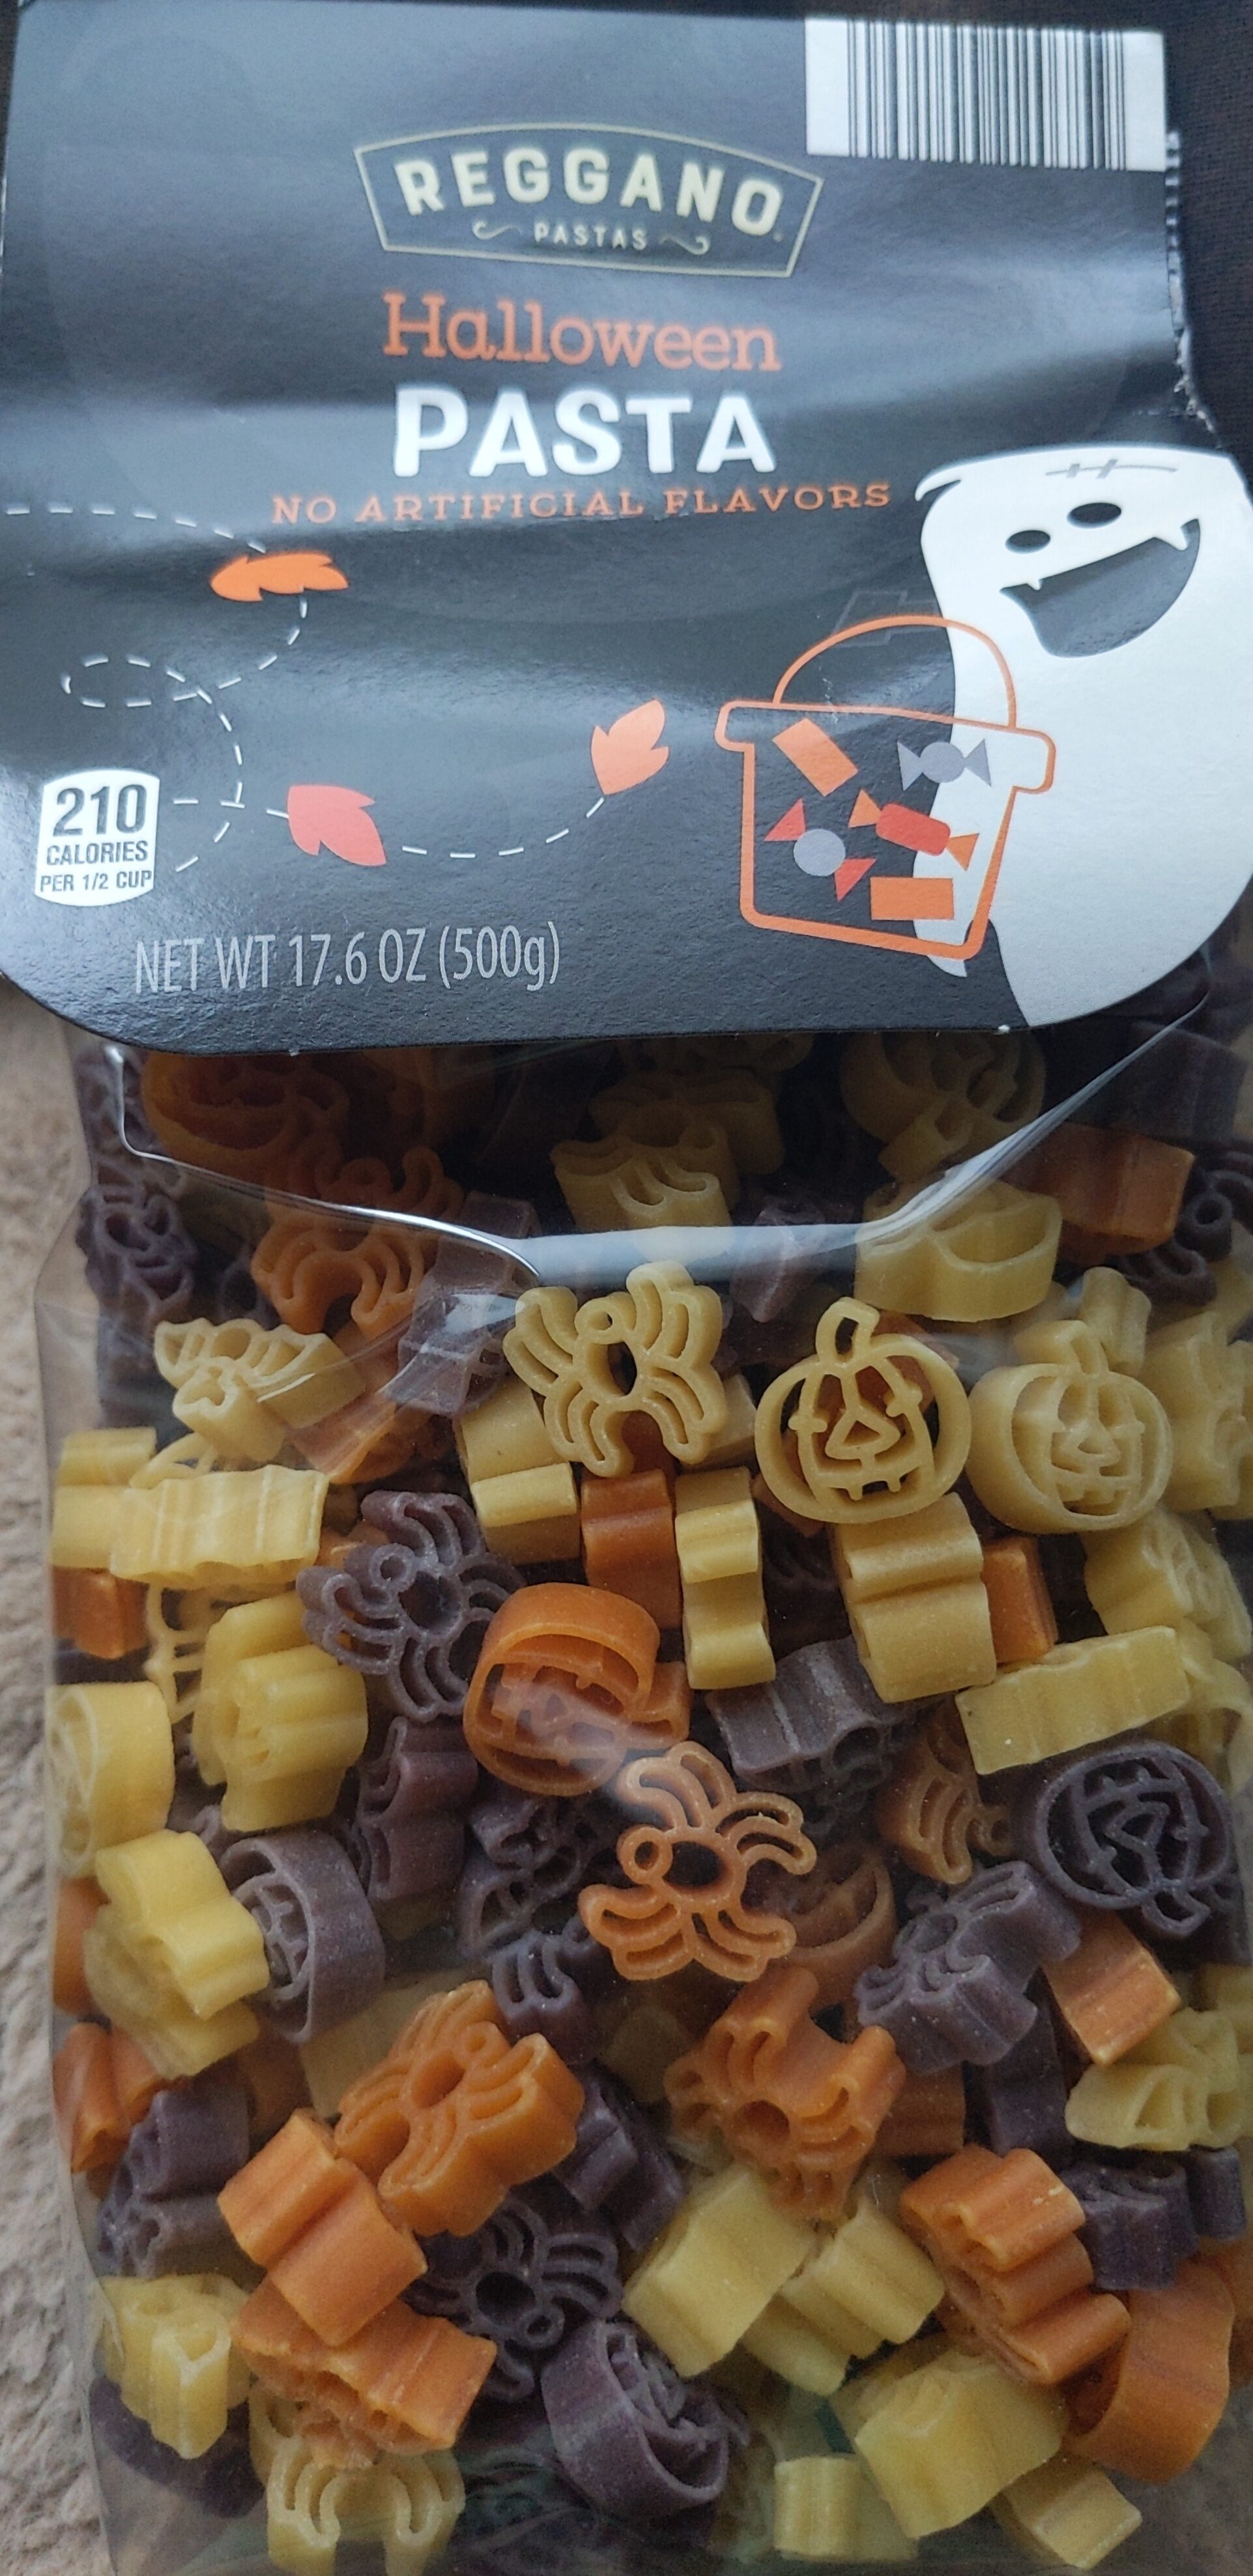 Halloween Pasta - Product